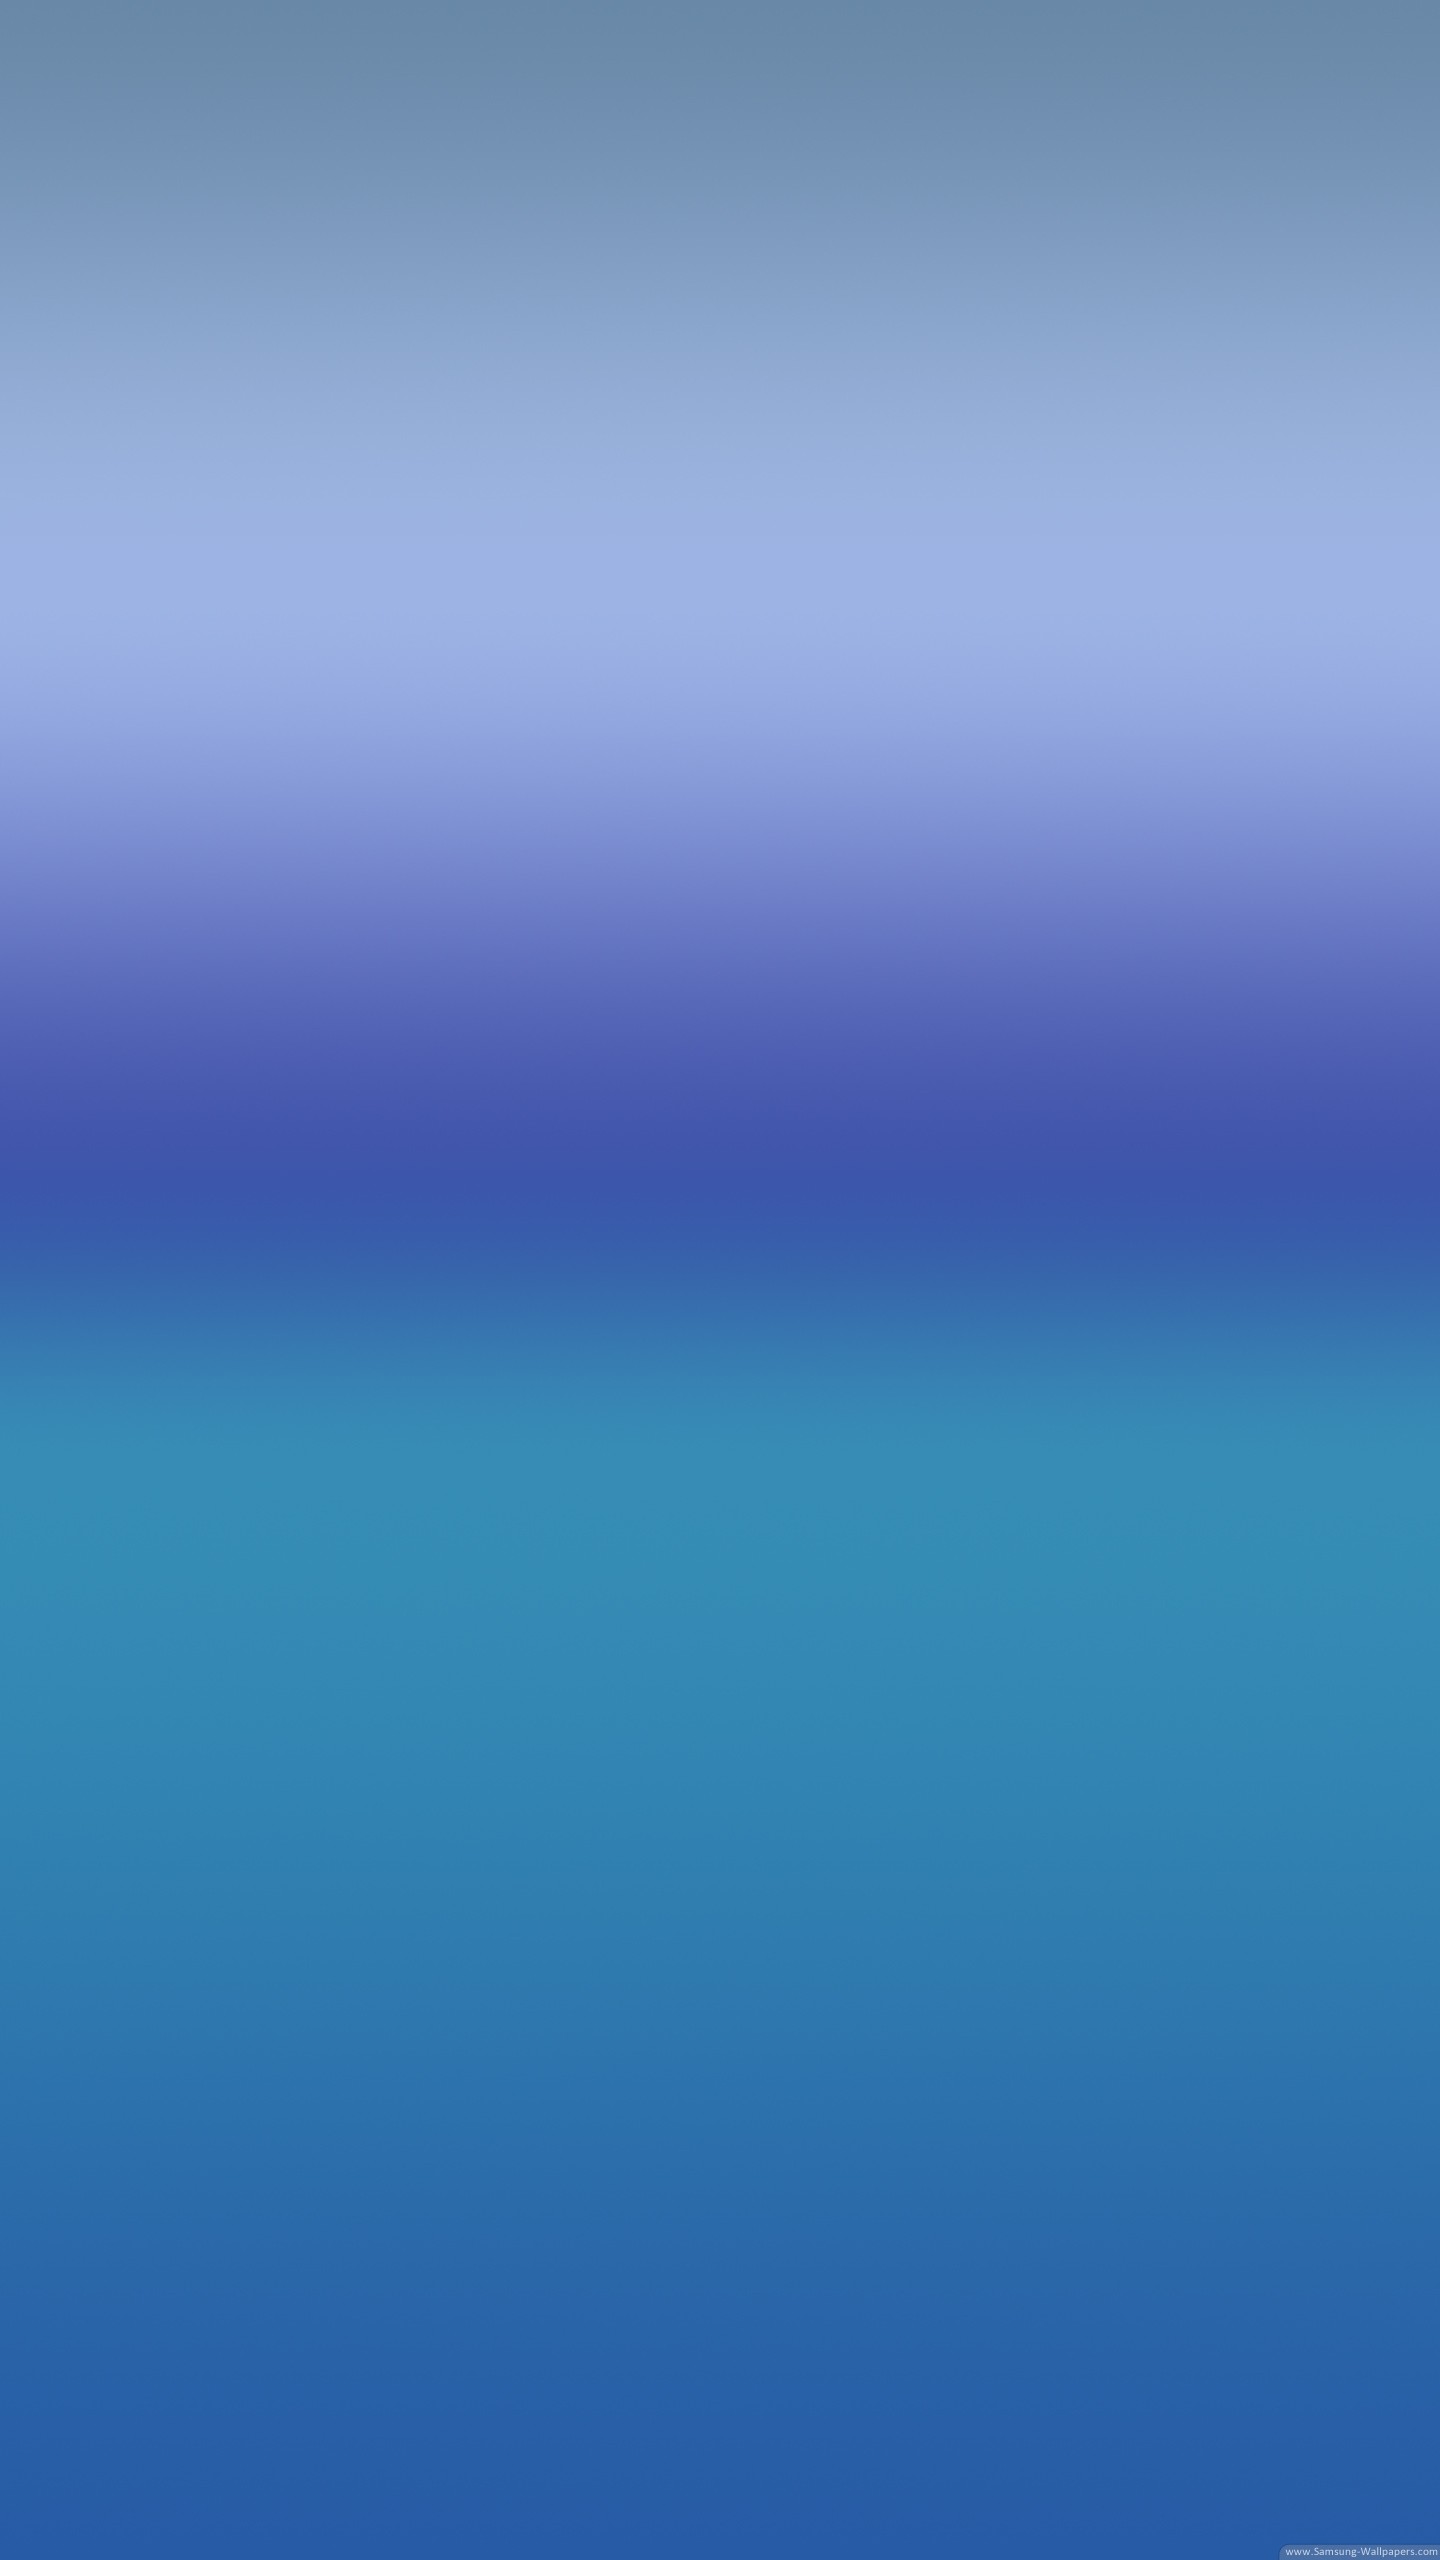 google pixel xl fond d'écran hd,bleu,aqua,jour,ciel,bleu cobalt